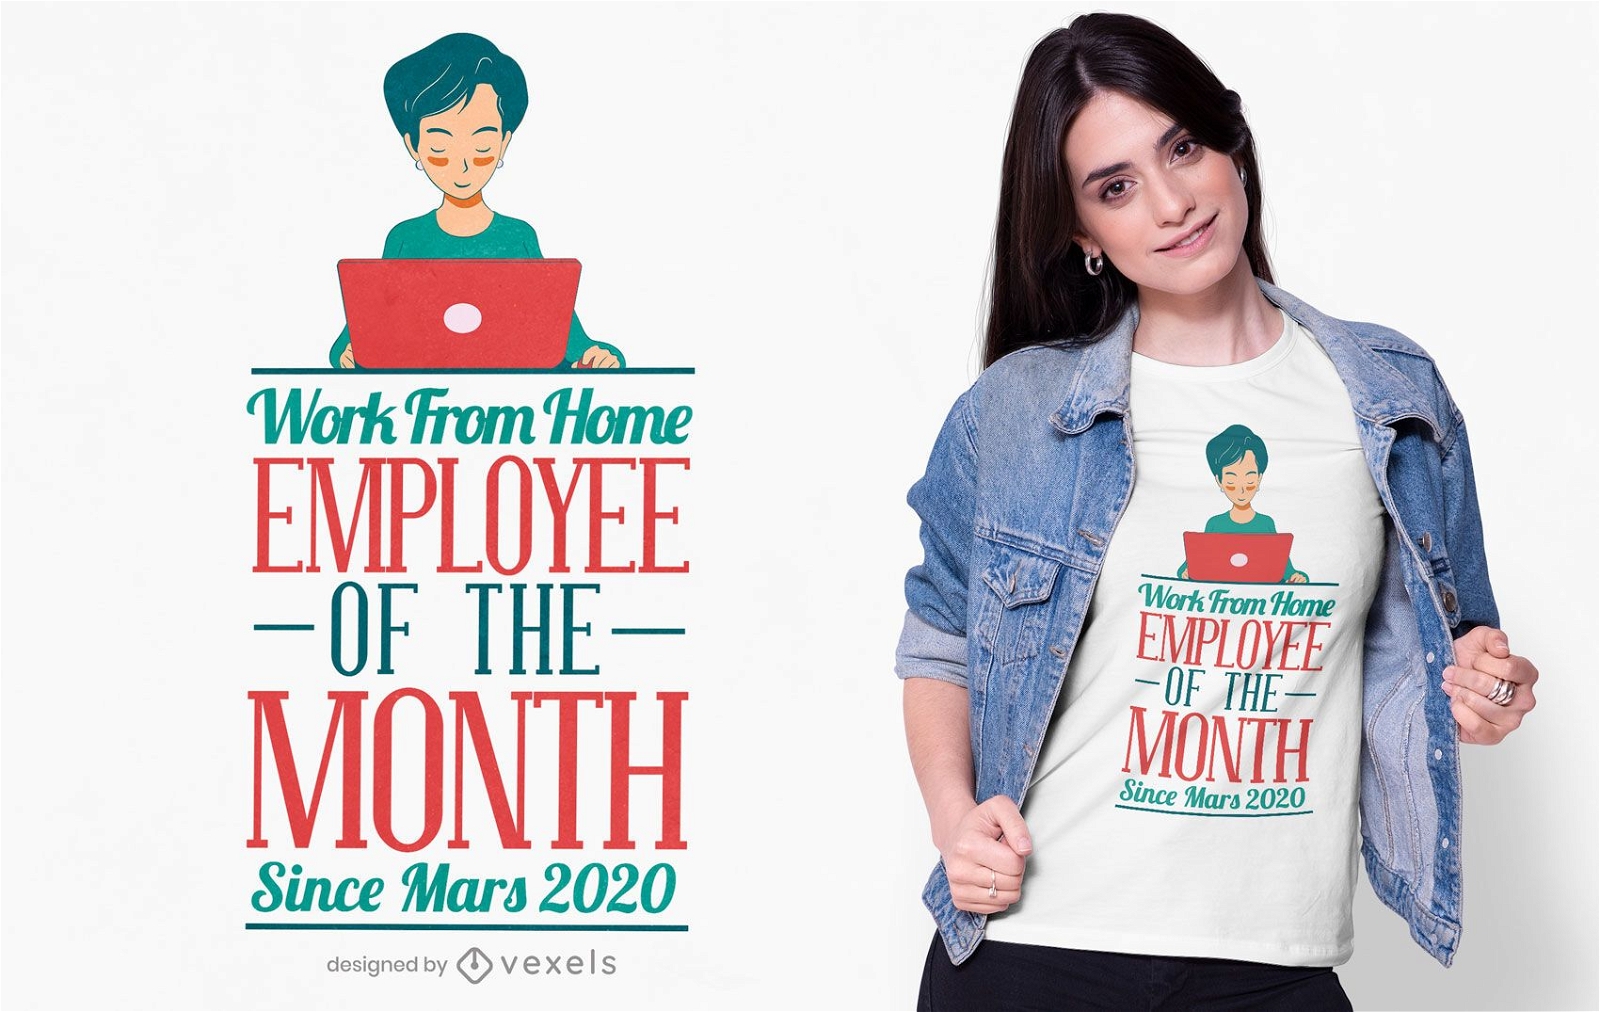 Home office employee t-shirt design